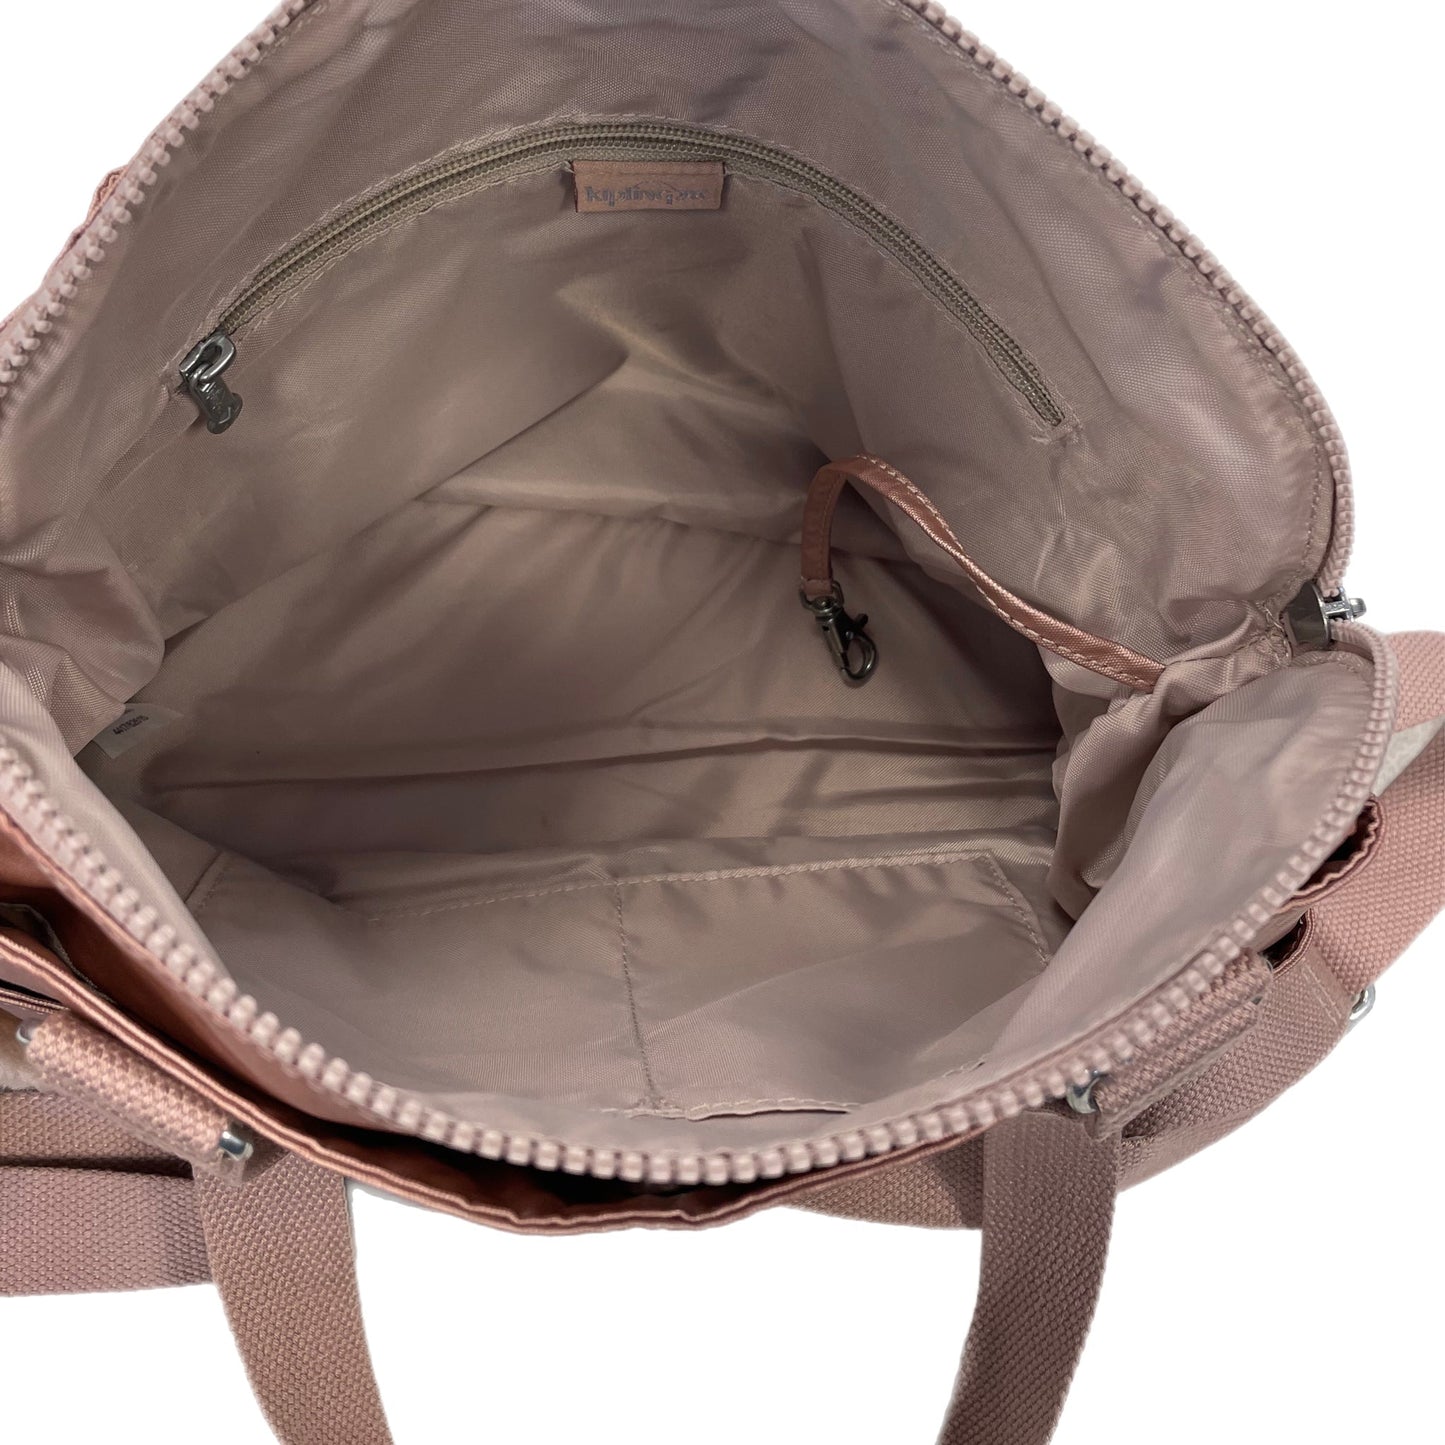 Handbag By Kipling  Size: Medium